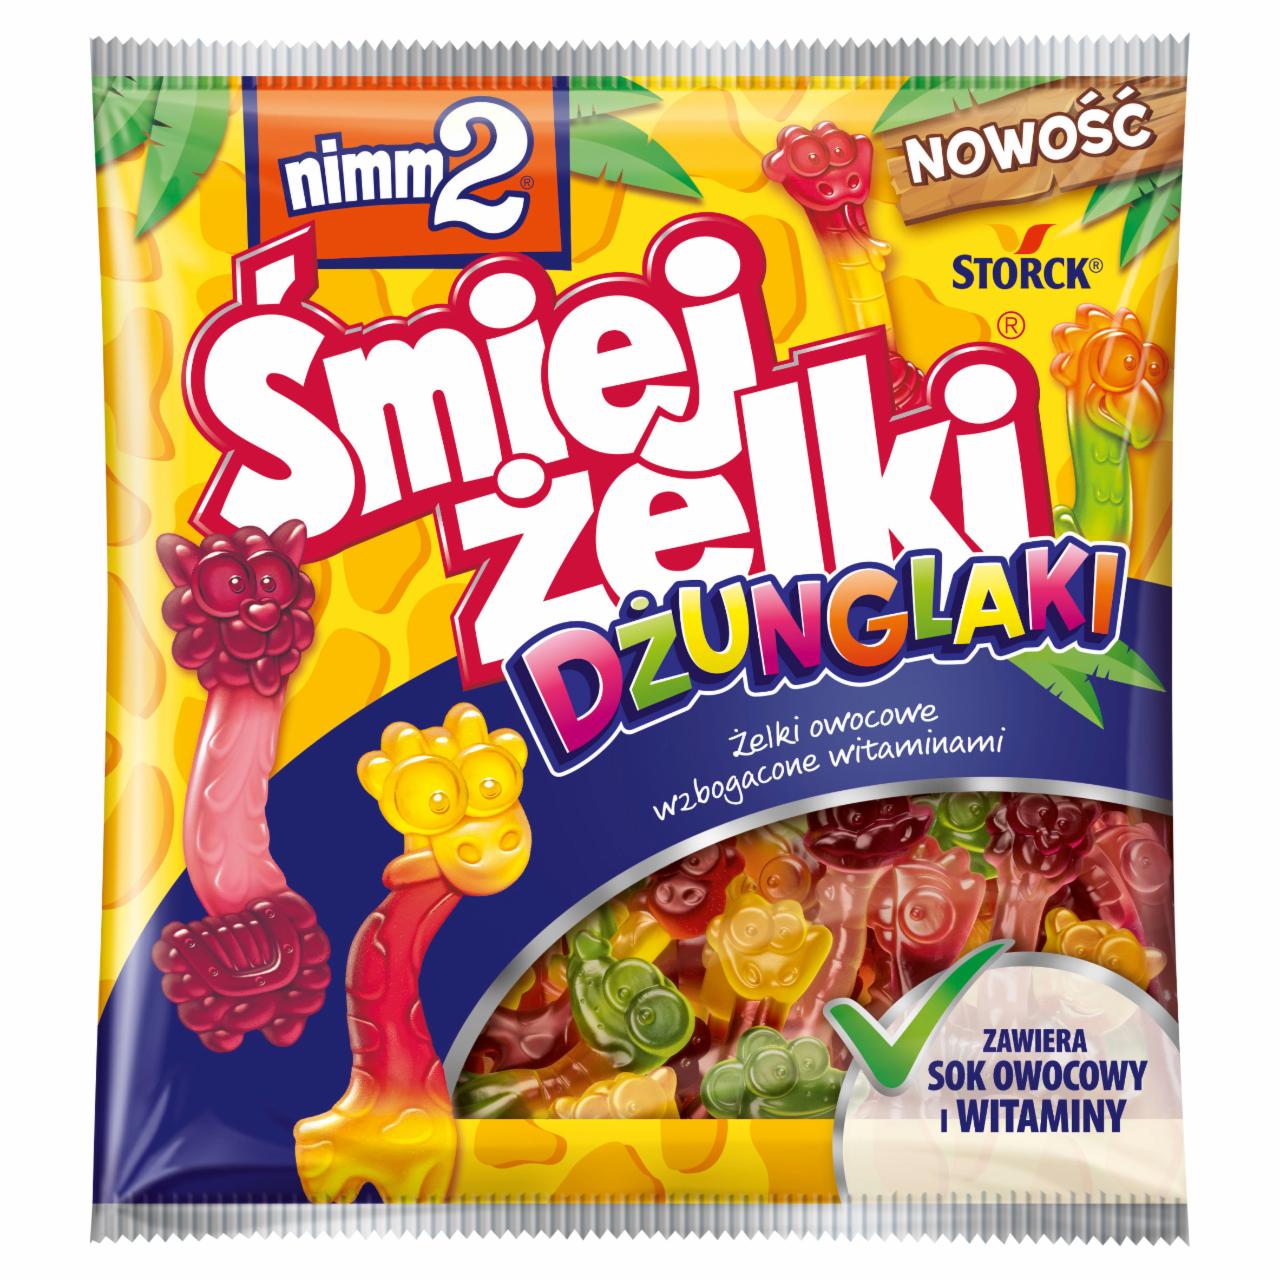 Photo - nimm2 Śmiejżelki Dżunglaki Fruit Jellies with Vitamins 90 g